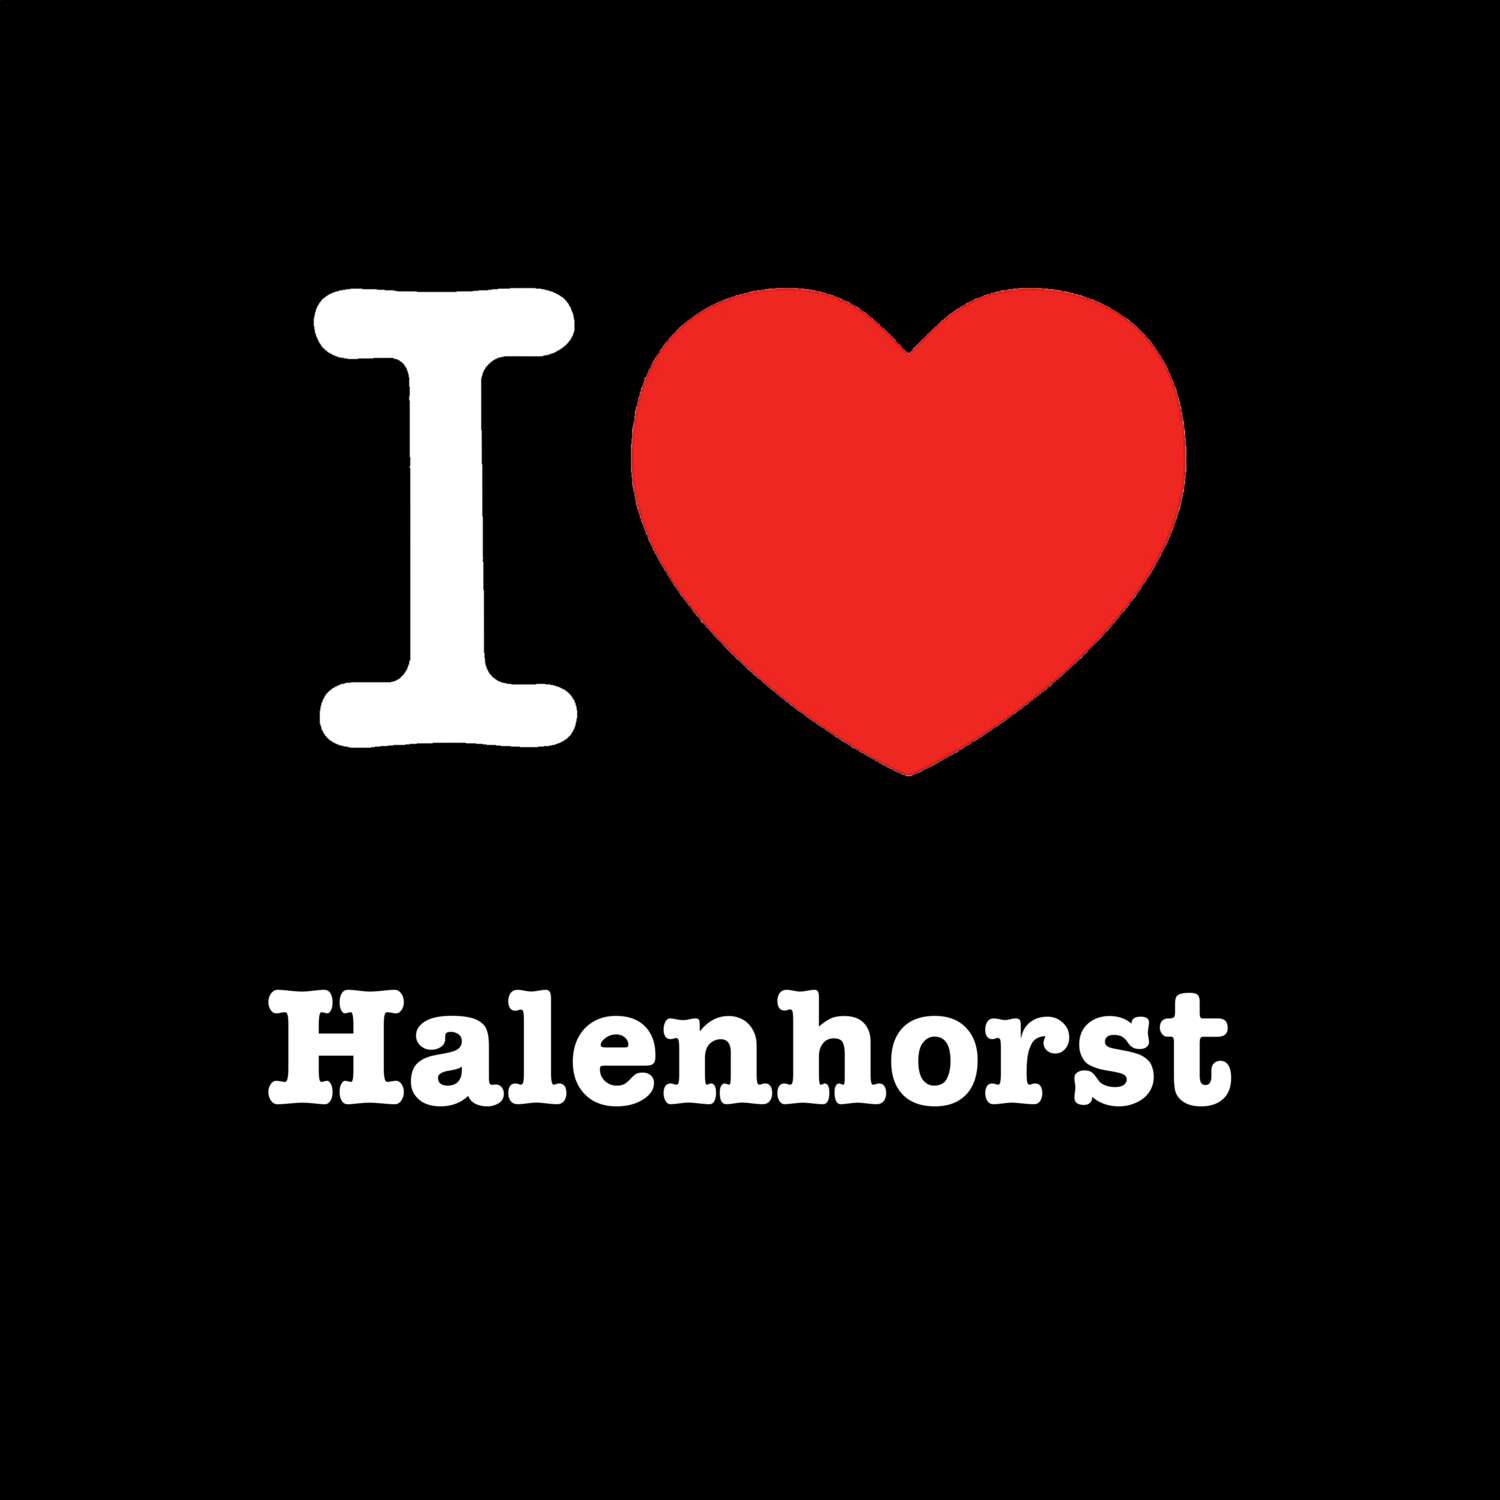 Halenhorst T-Shirt »I love«